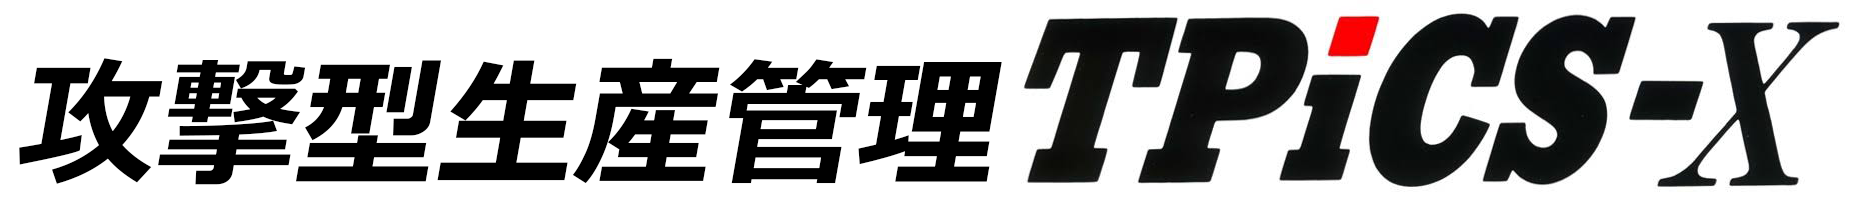 logo_m365